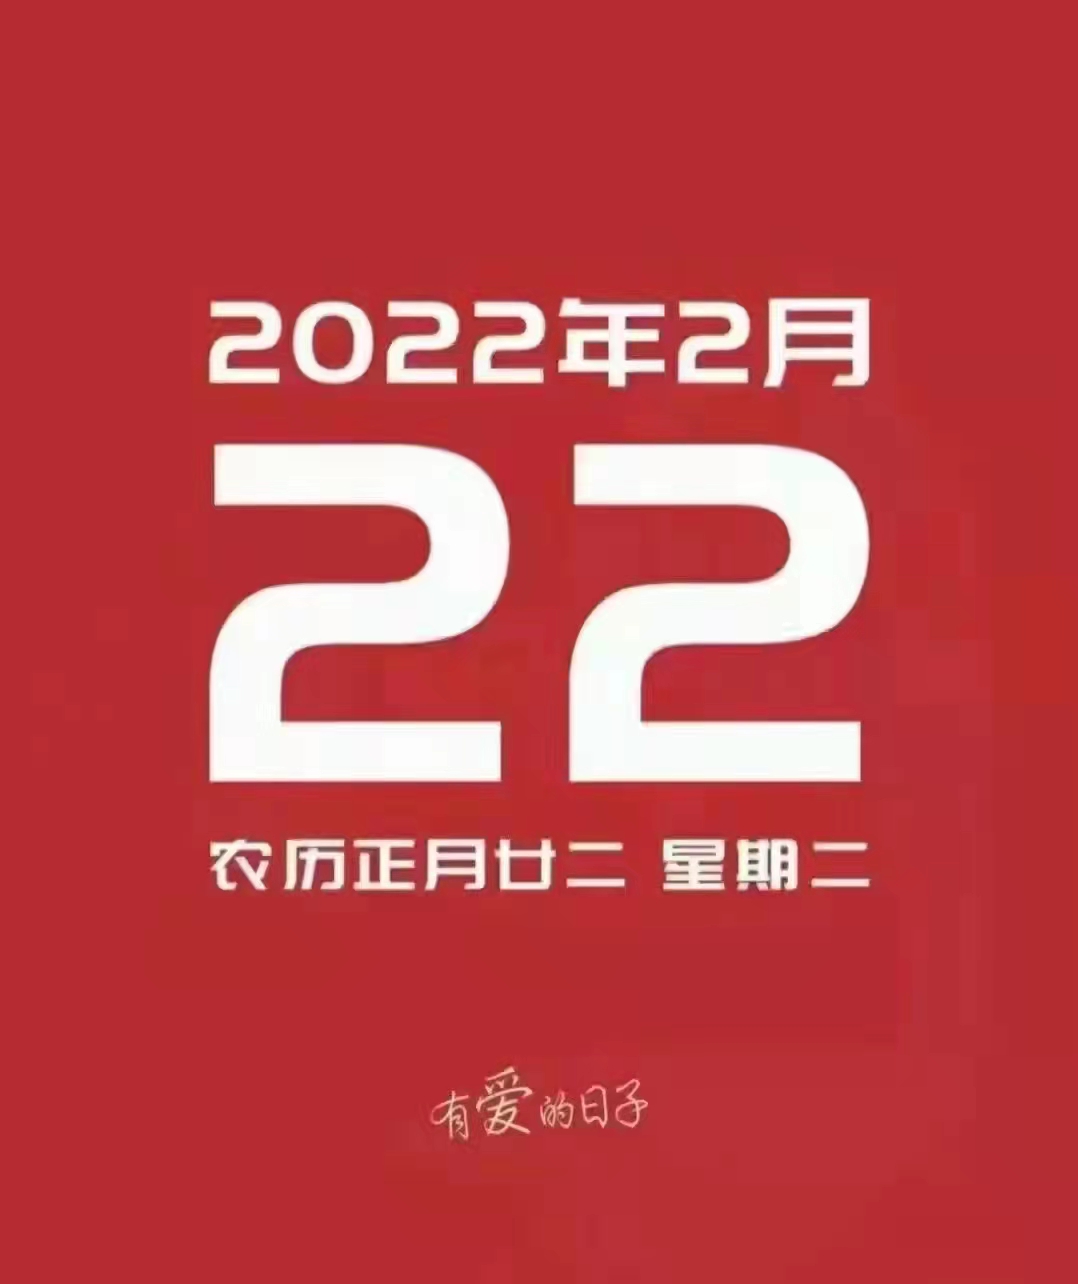 20220222当天吉日图片图片